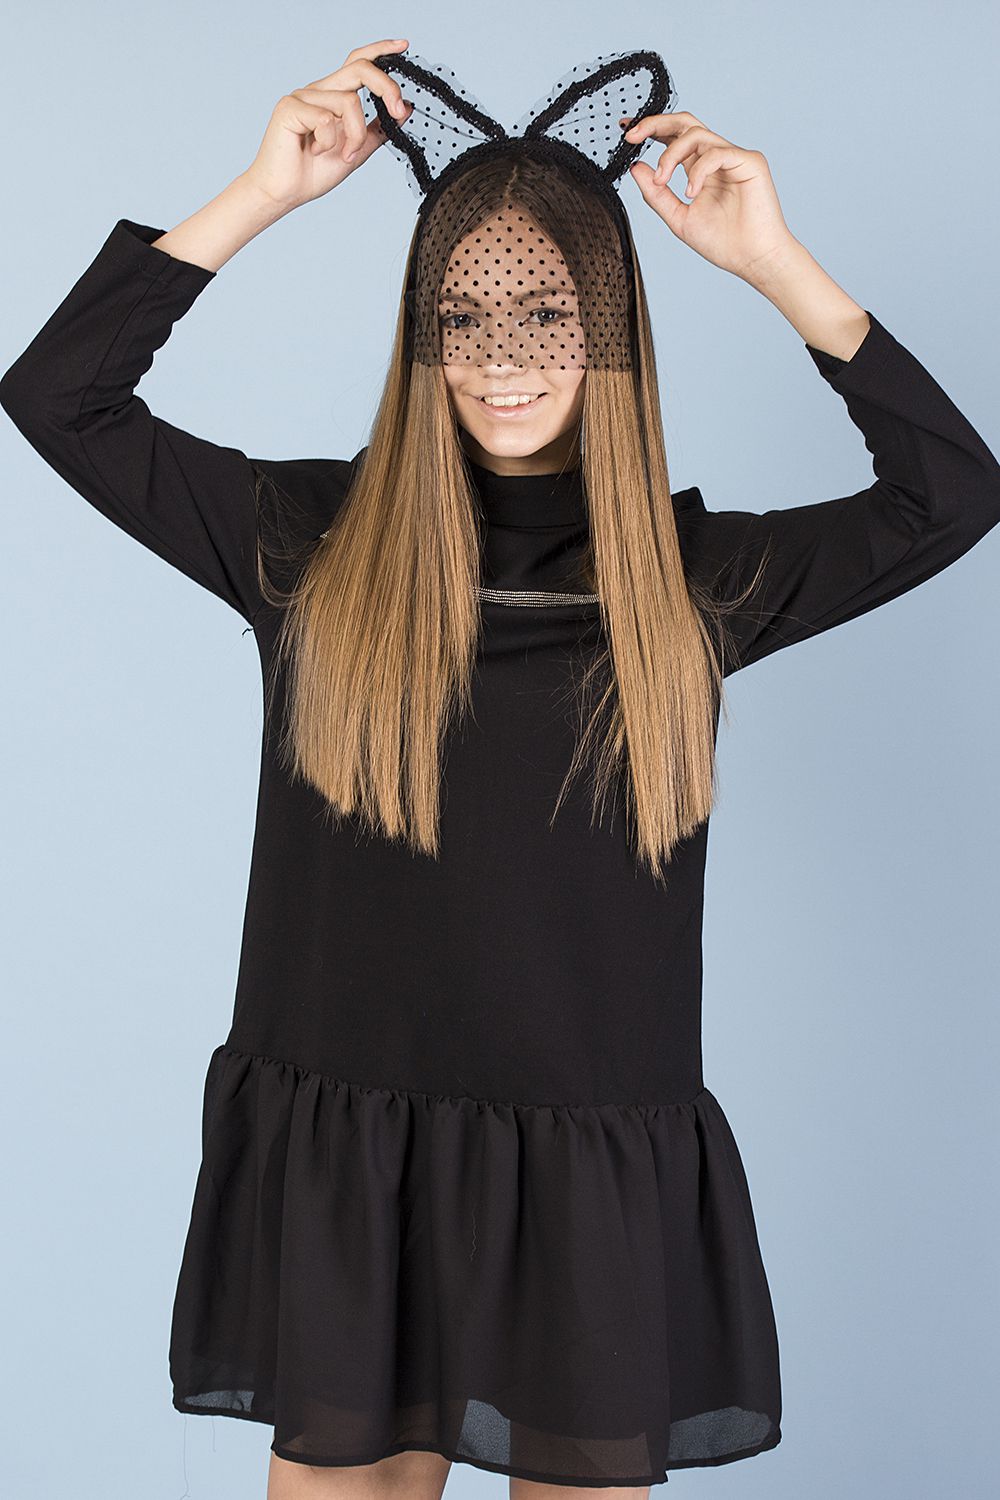 ⭐ Купить платье для девочки «Gaialuna», размер 152, чёрной окраски ...